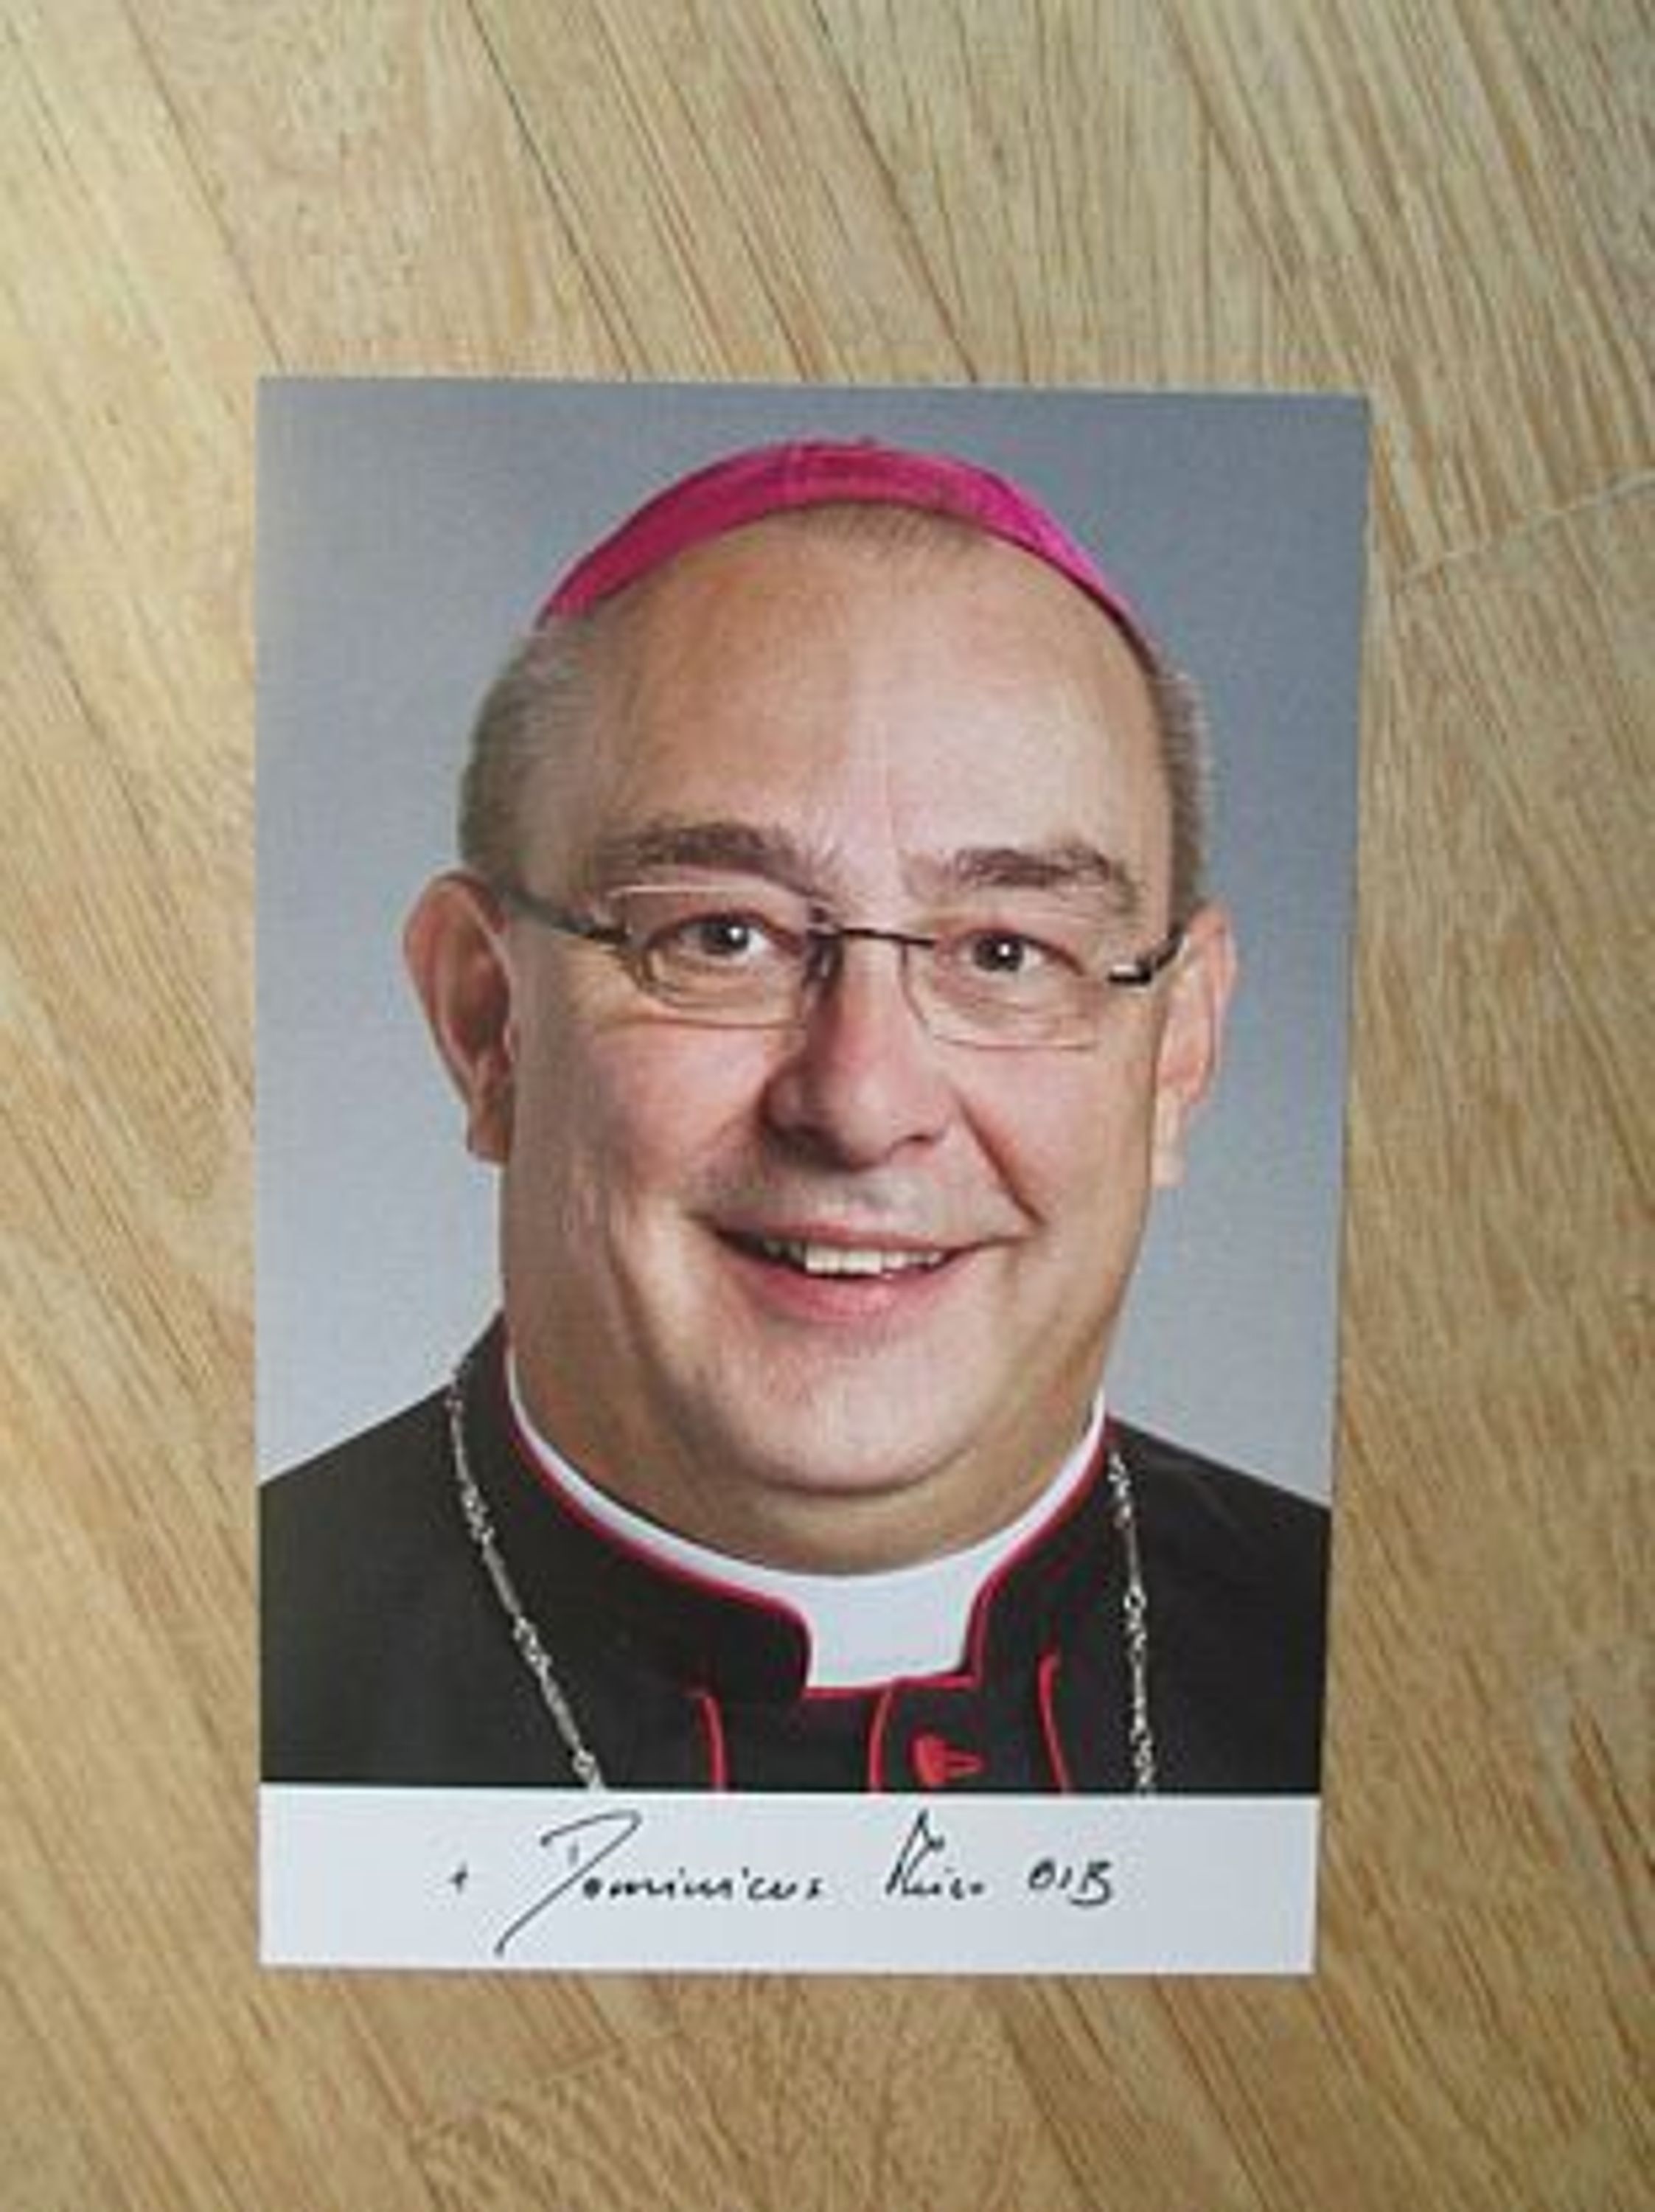 Weihbischof von Paderborn Dr. <b>Dominicus Meier</b> - Autogramm! - 82920214